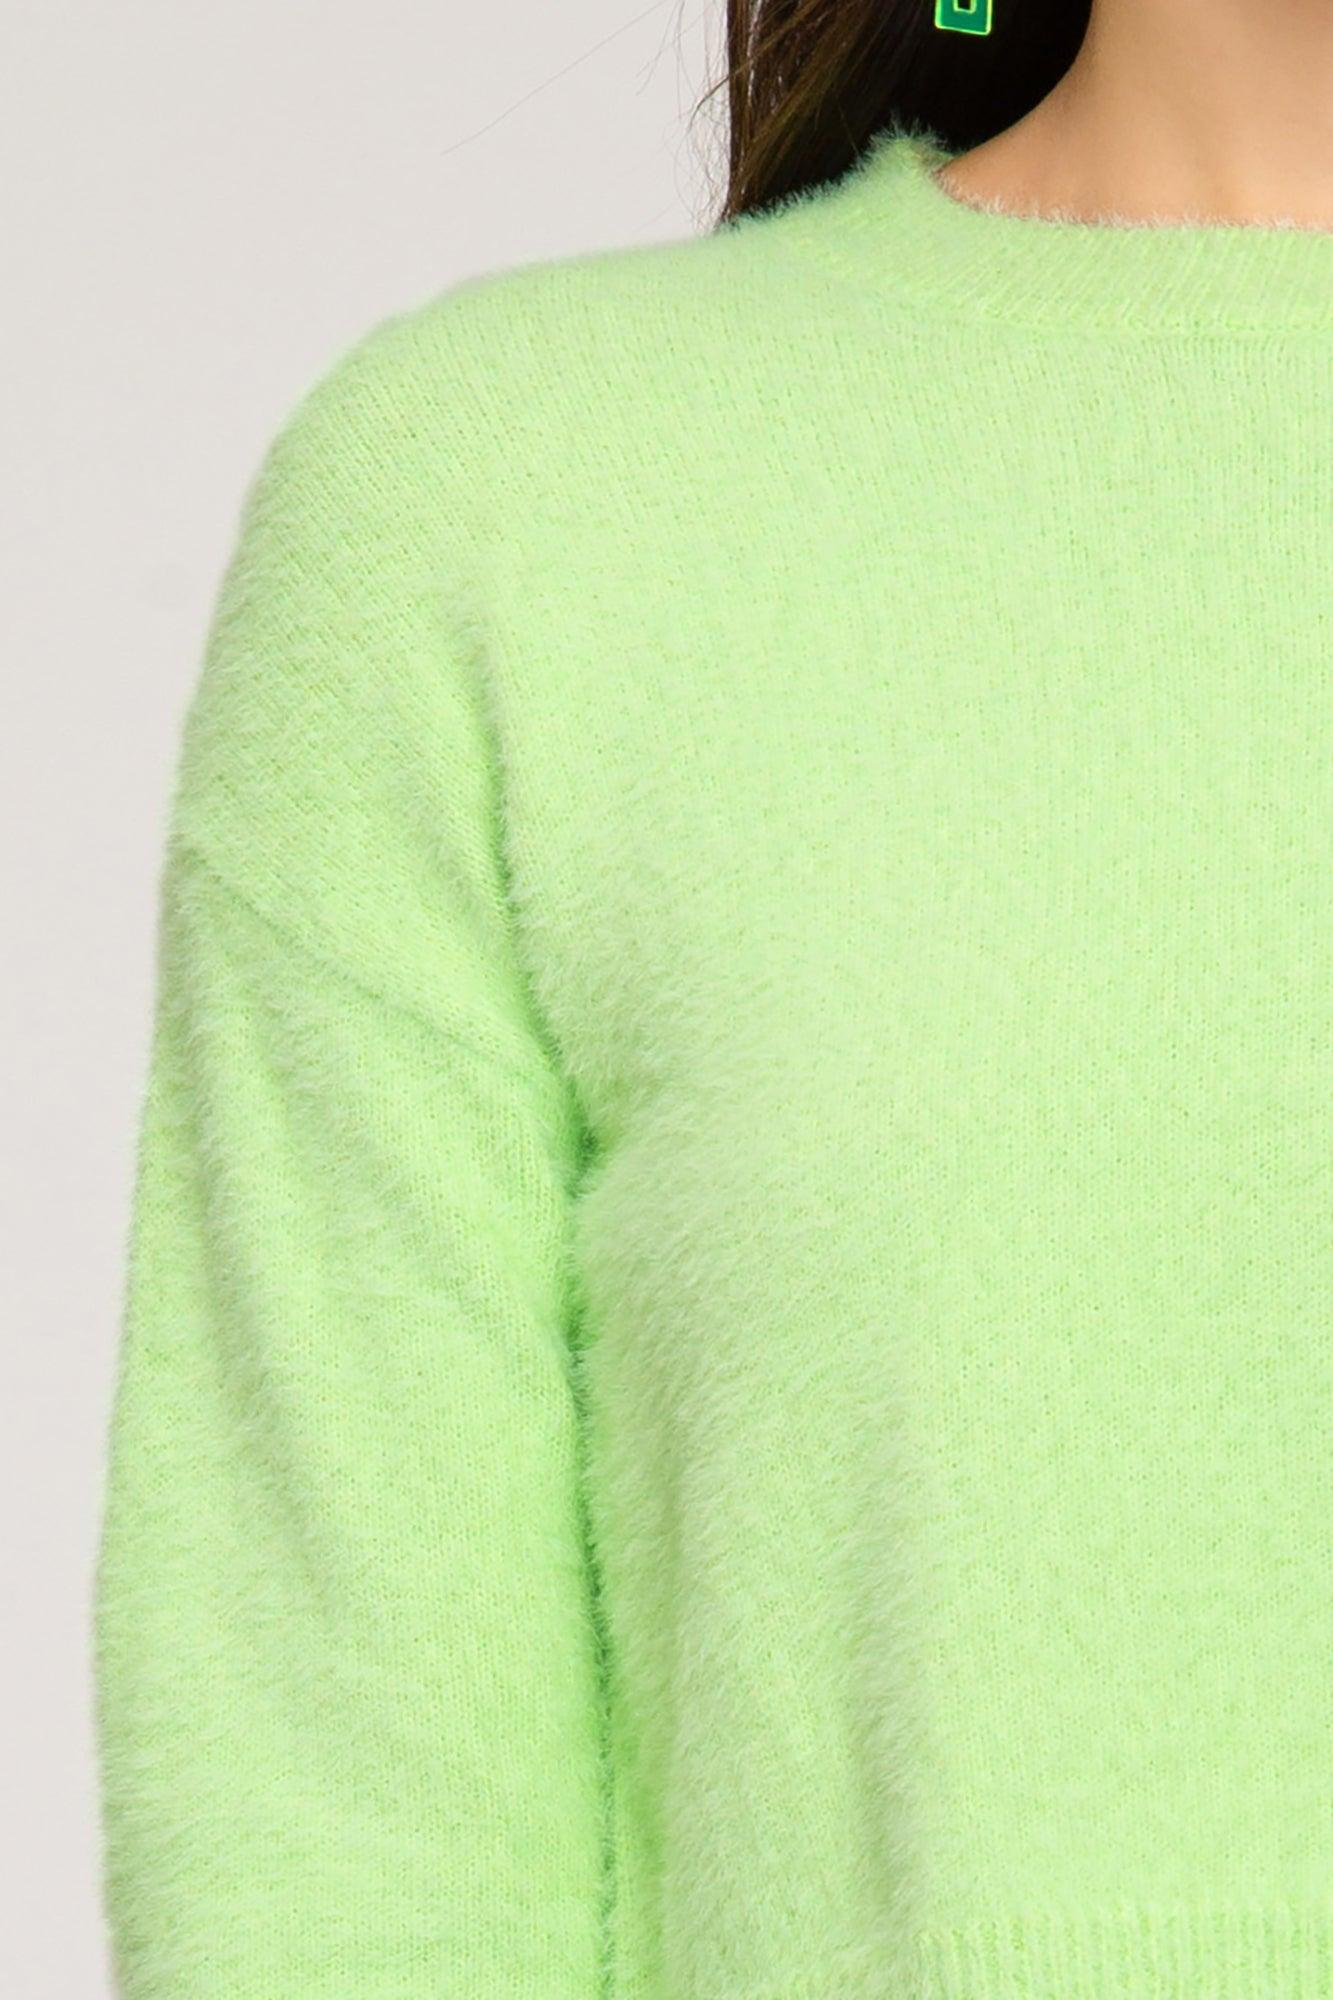 Long sleeve crop sweater-Tops-Sweater-She + Sky-alomfejto